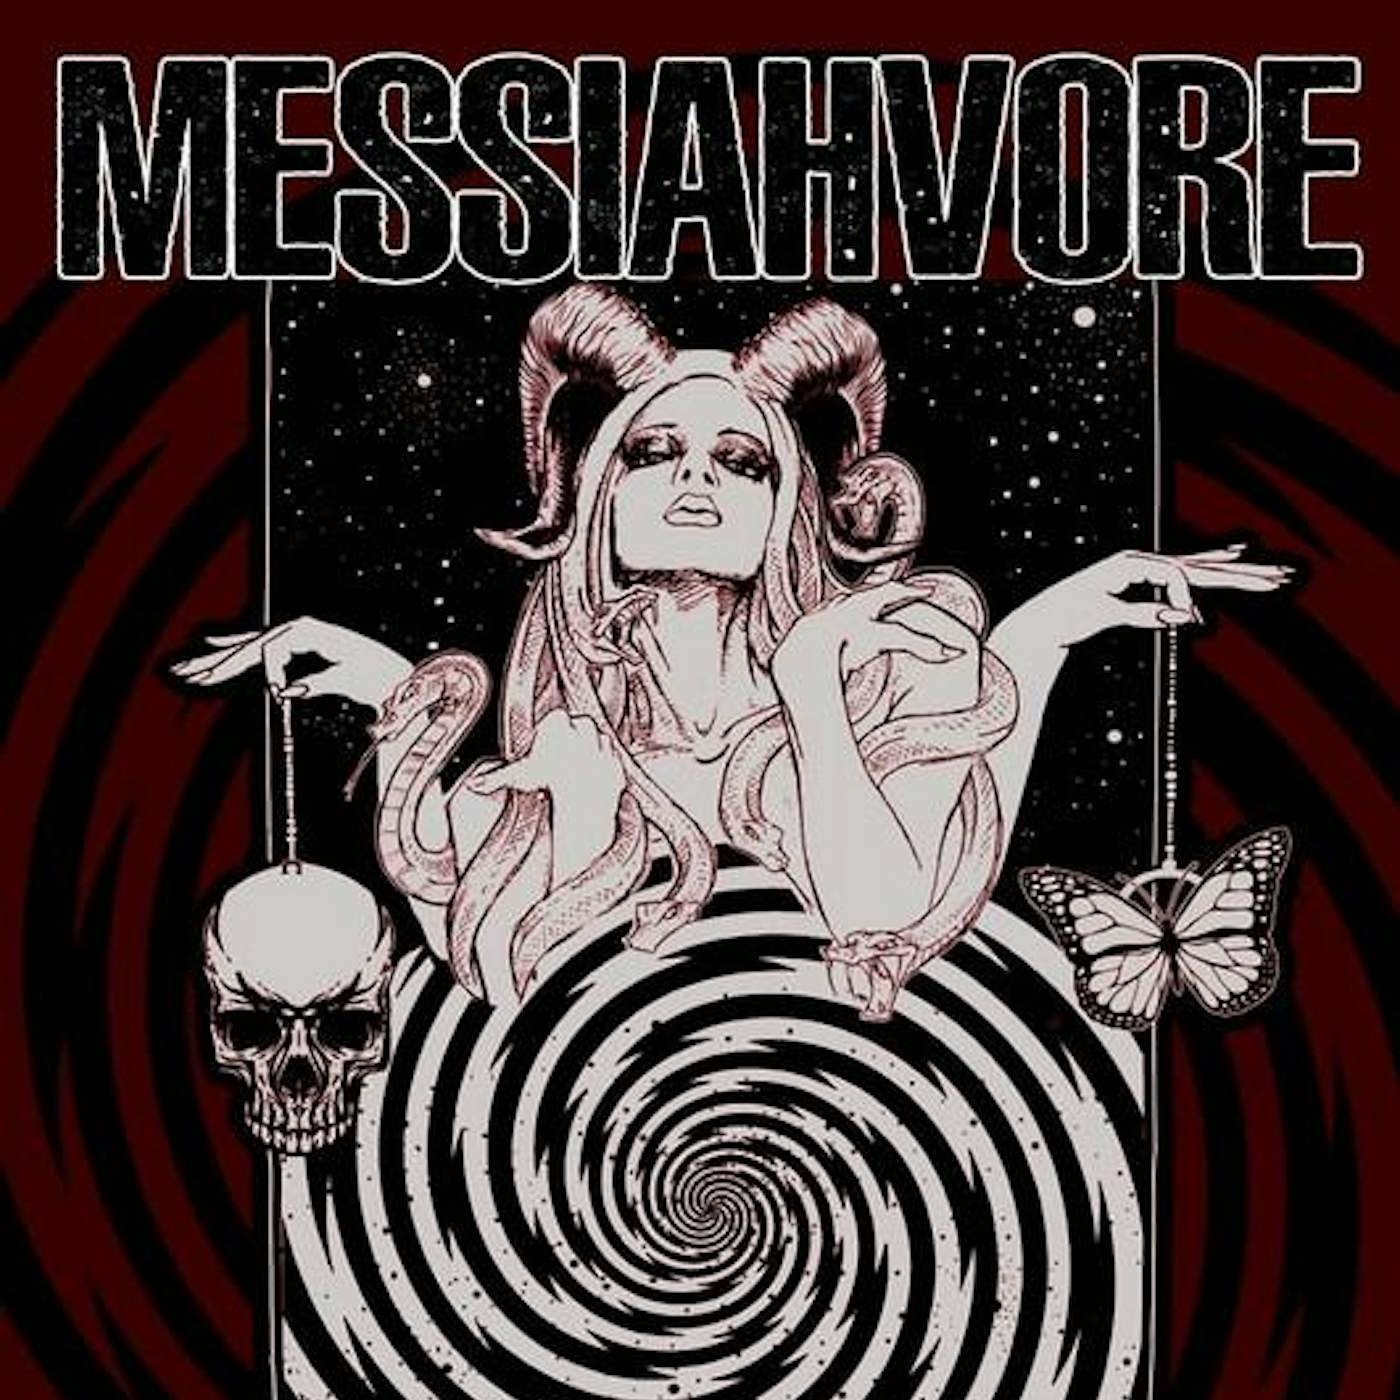 Messiahvore